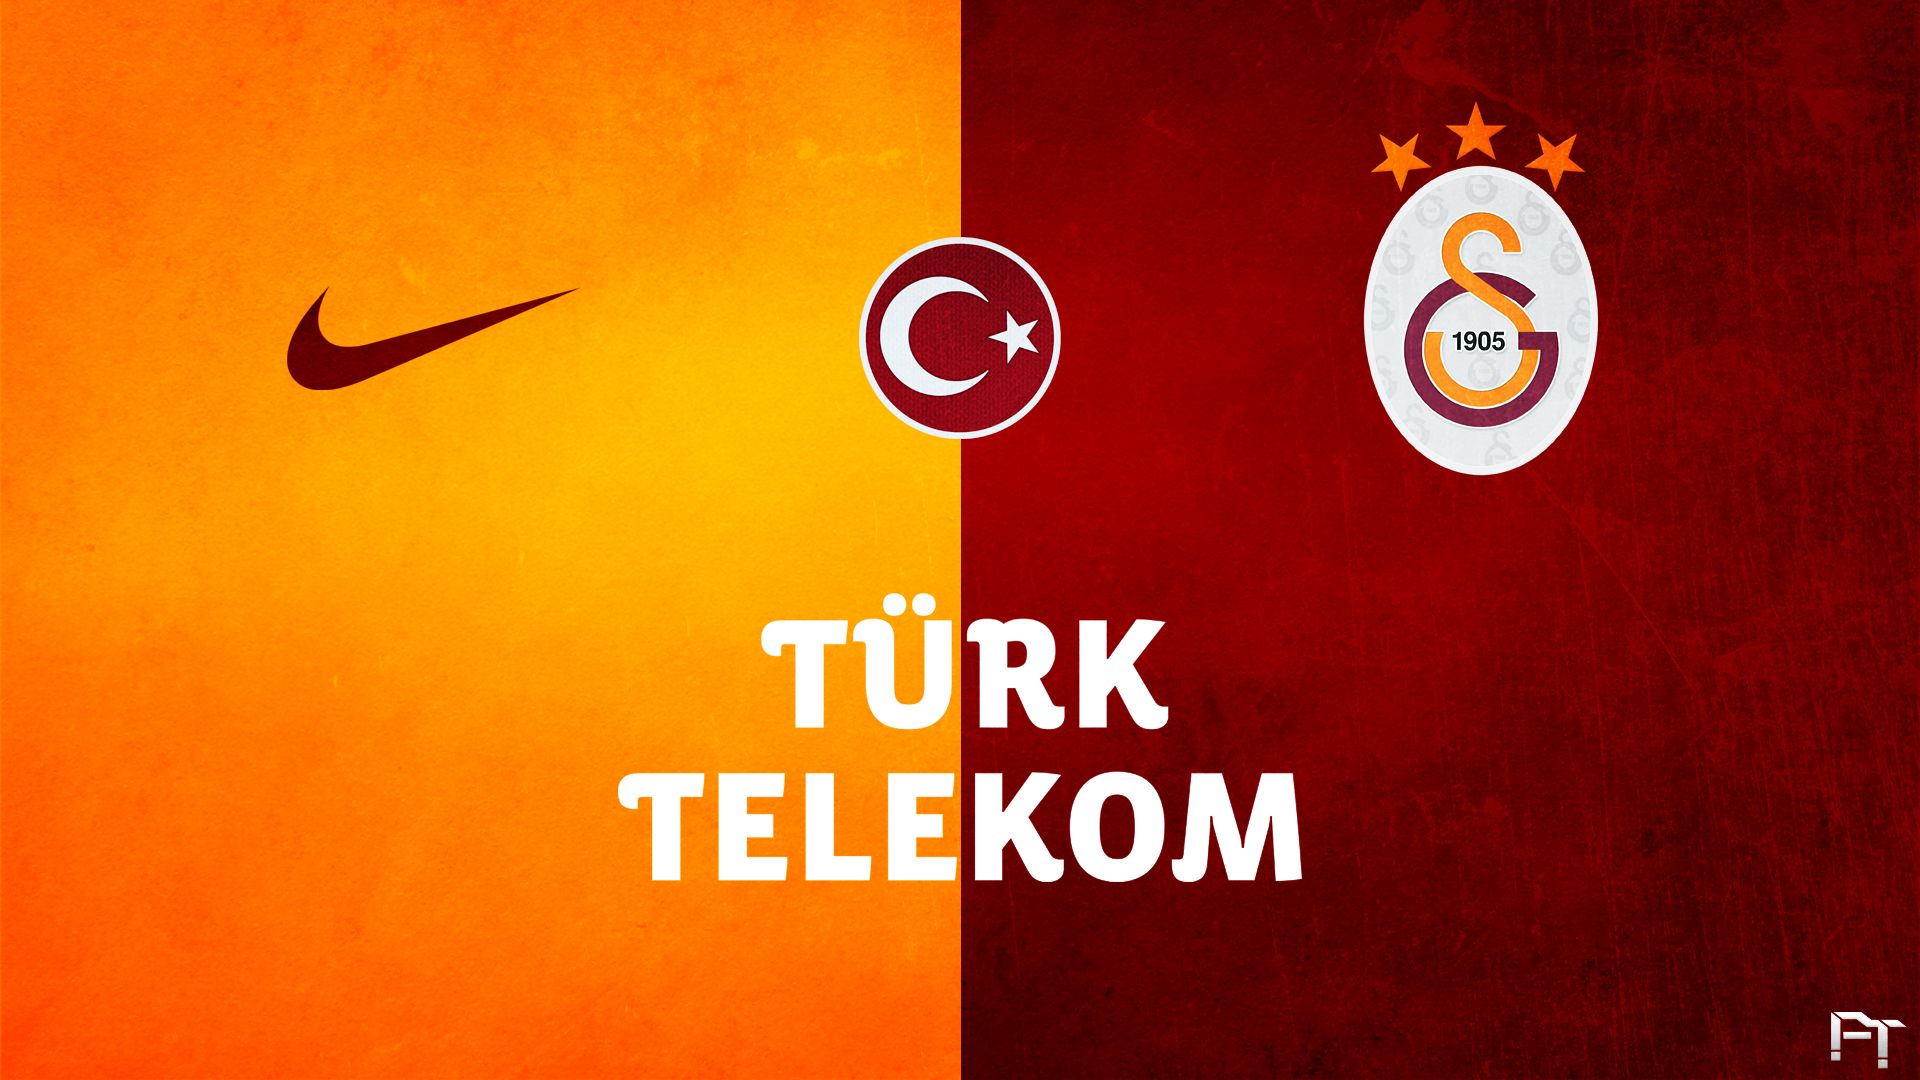 Descarga gratuita de fondo de pantalla para móvil de Fútbol, Logo, Emblema, Deporte, Galatasaray S K.